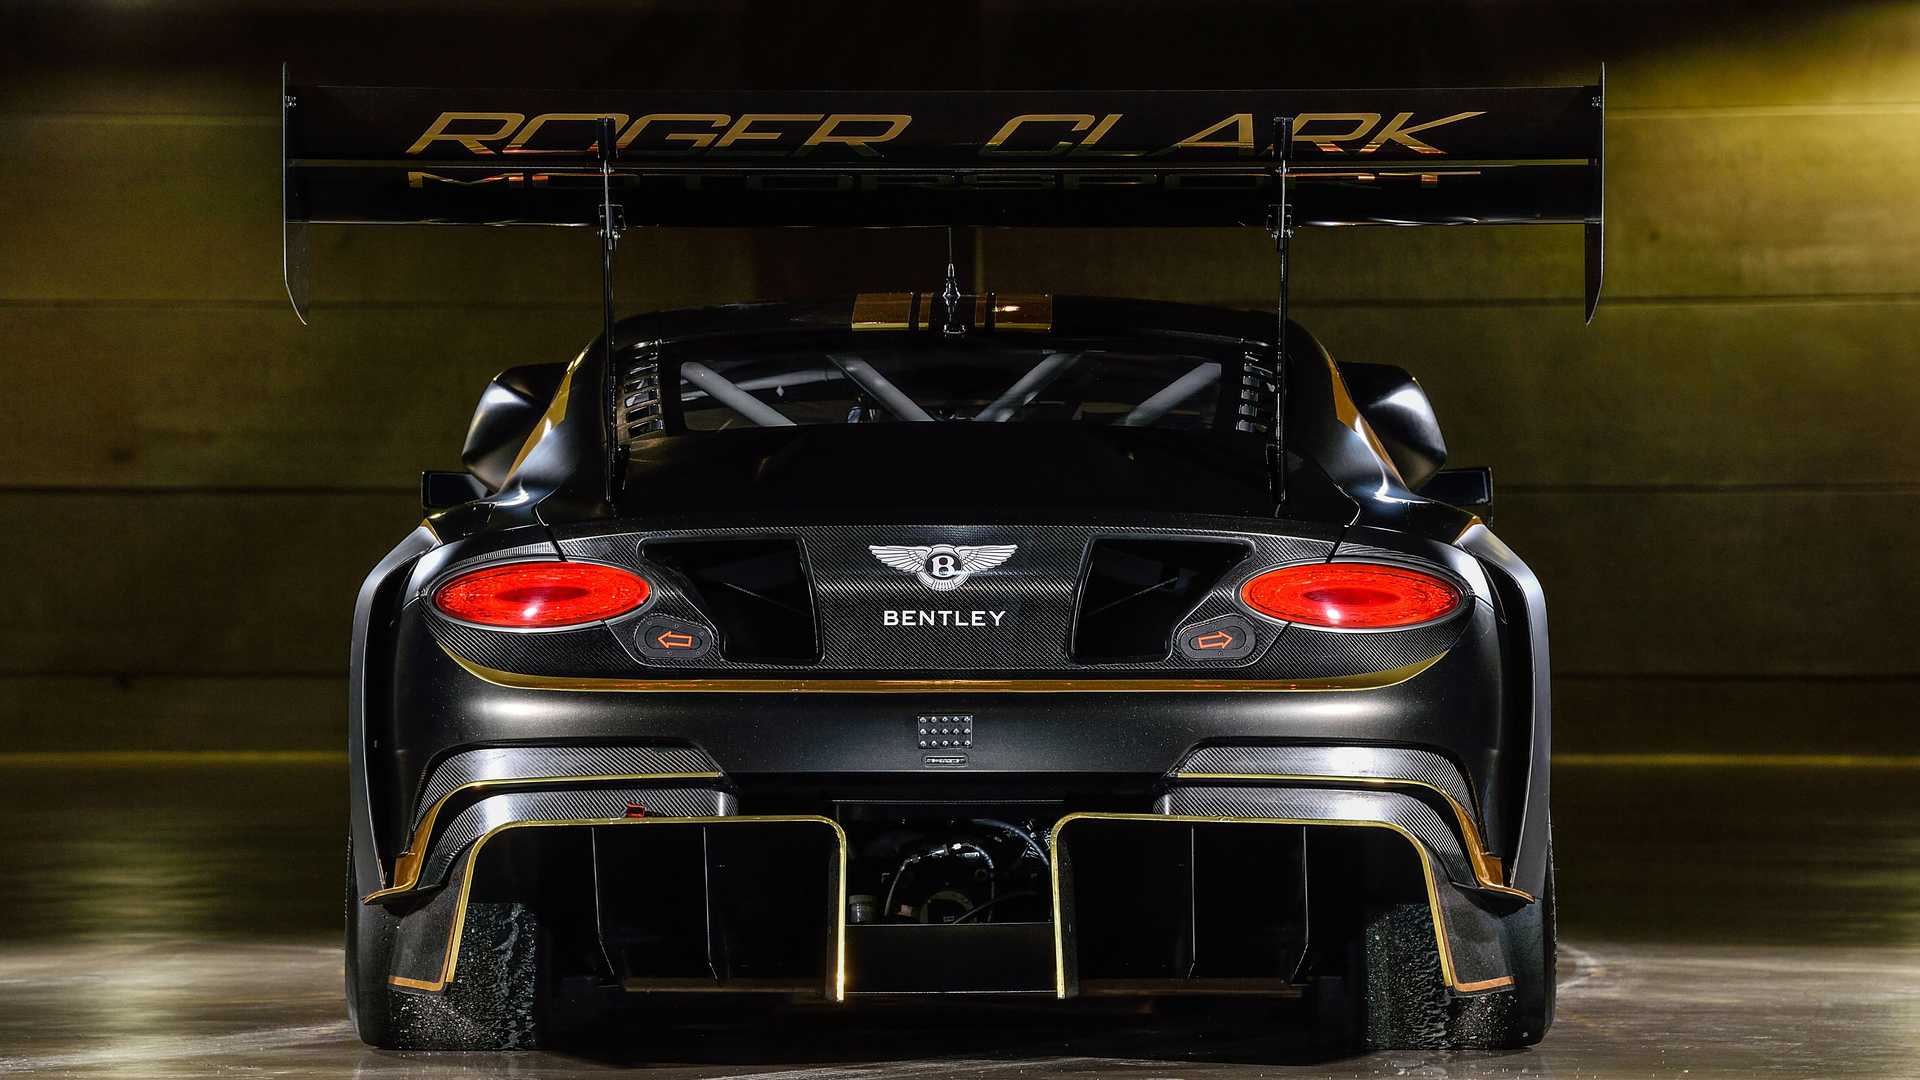 بال عقب بنتلی کنتیننتال جی تی 3 پایکز پیک / Bentley Continental GT3 Pikes Peak سیاه رنگ